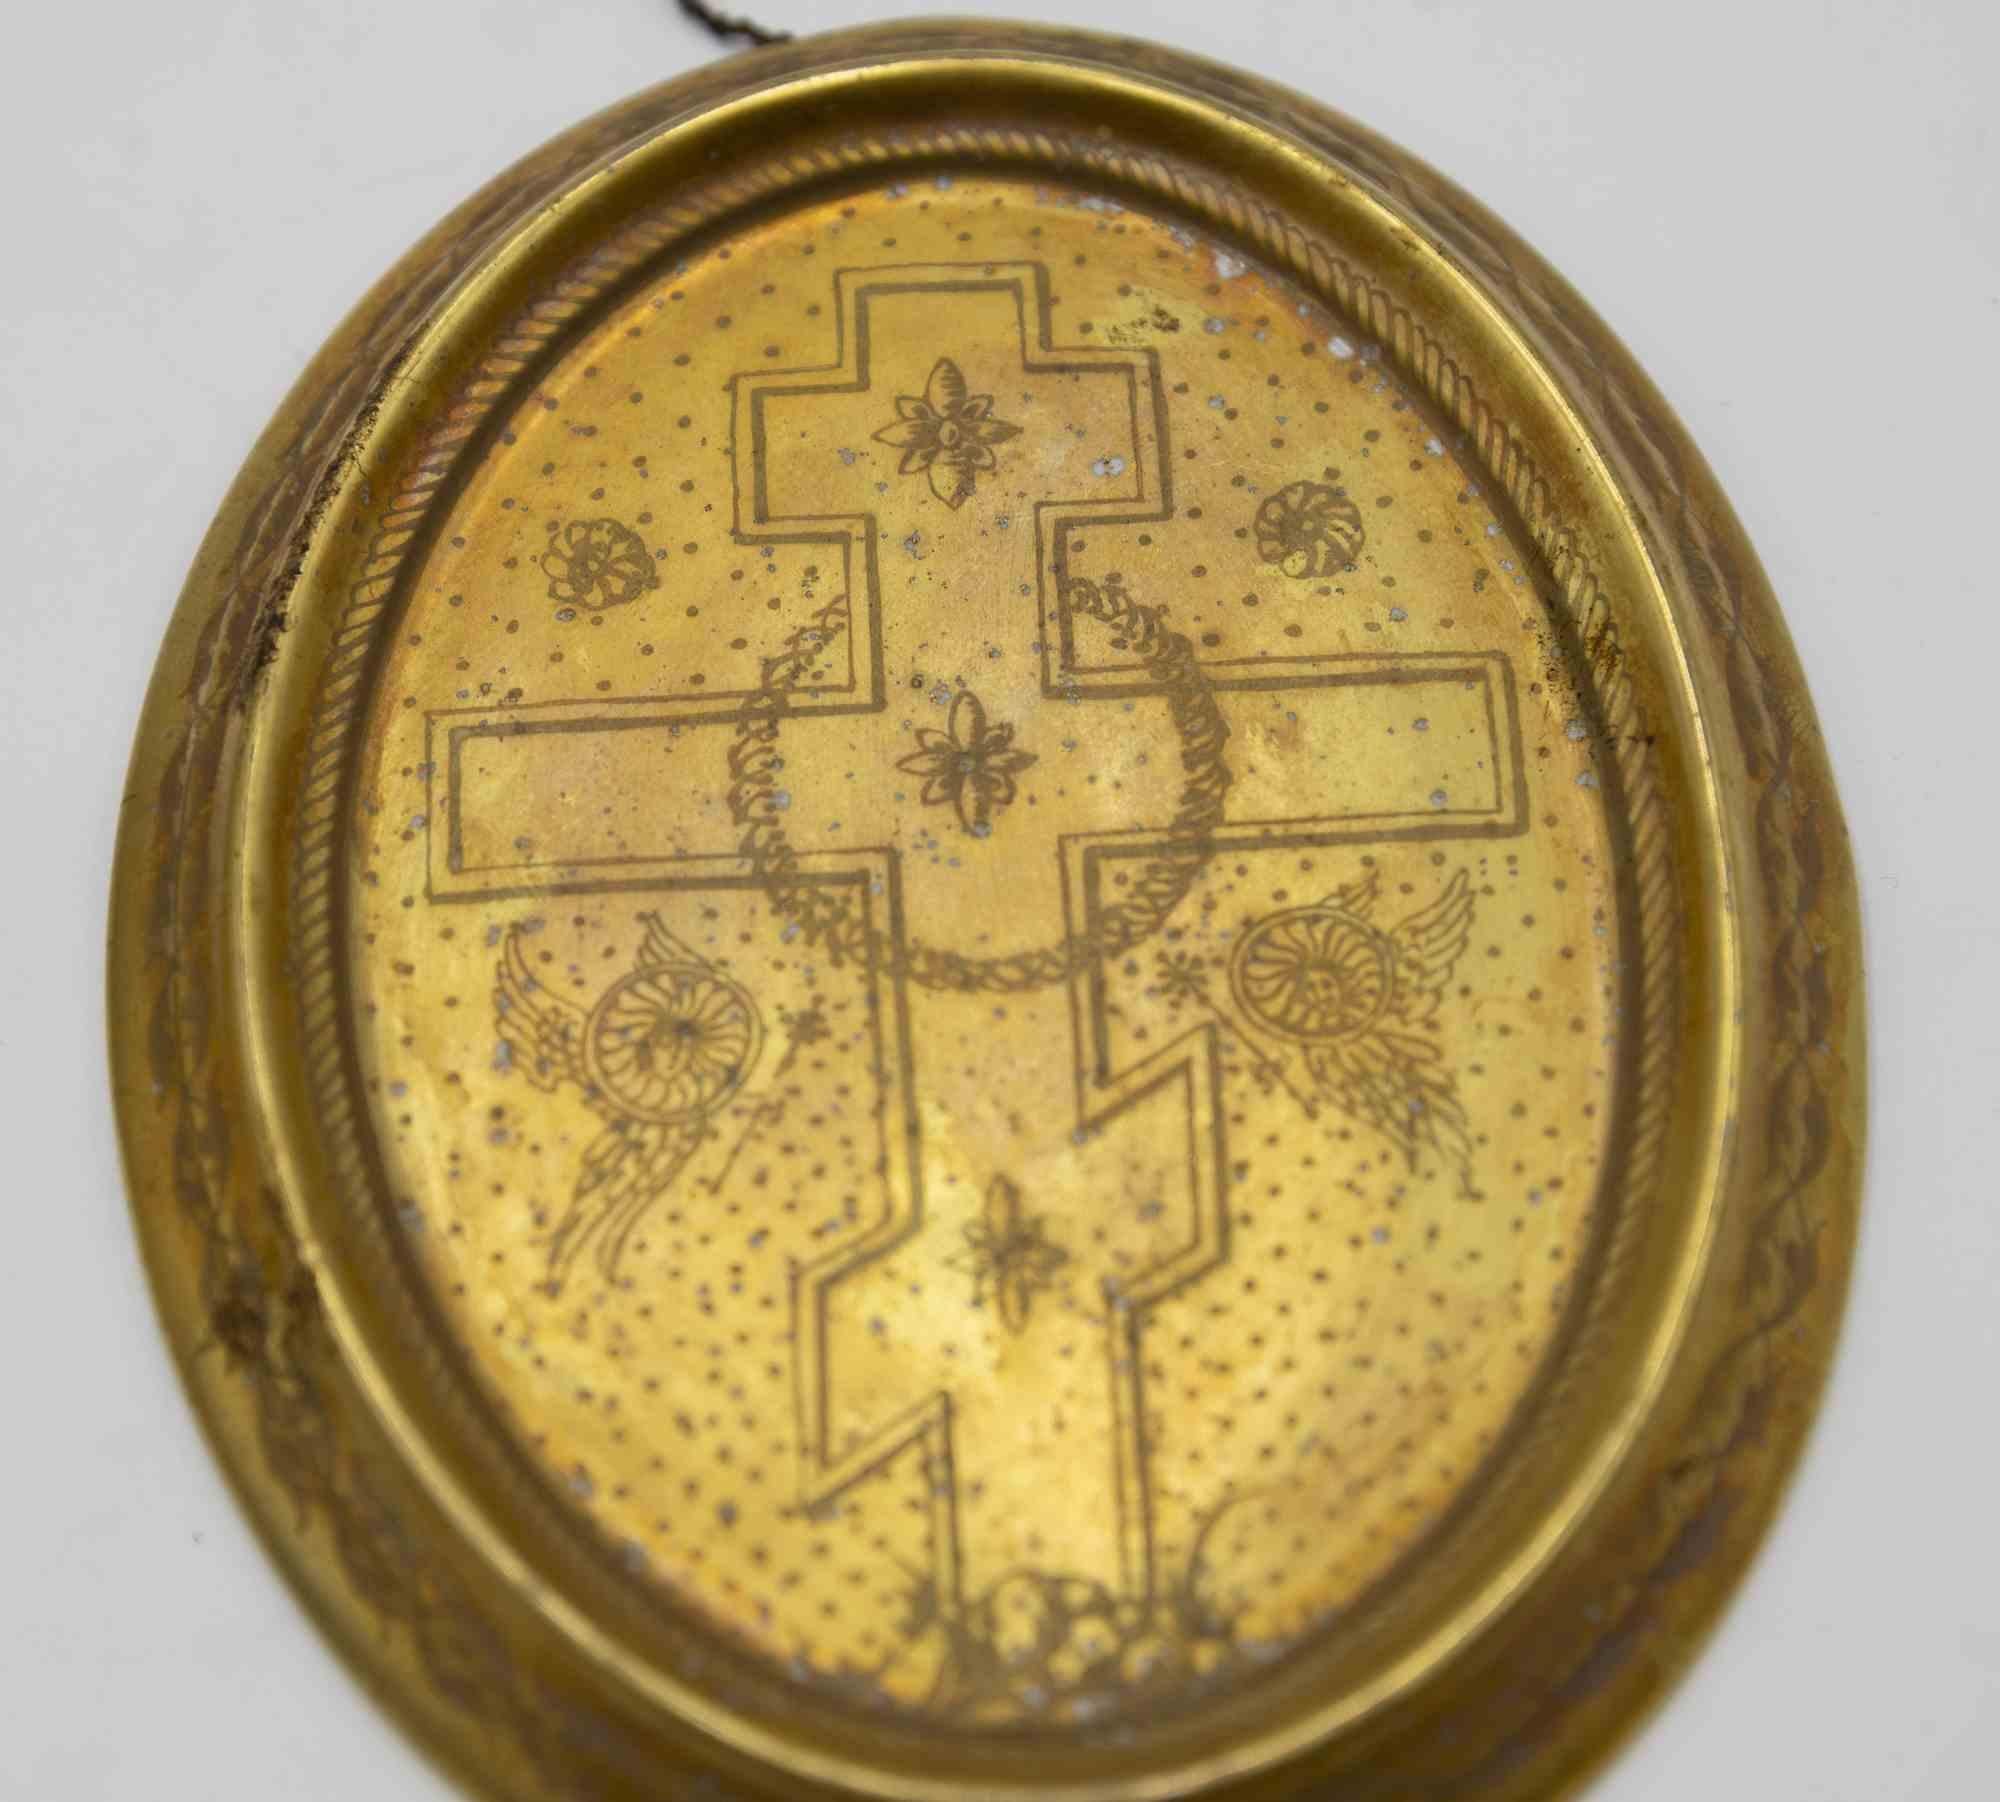 Paire de plaques en porcelaine dorée est un objet décoratif réalisé au début du 20ème siècle.

Disques liturgiques représentant respectivement une croix et le visage de San Demetrios.

Inscription en cyrillique (probablement réalisée dans un